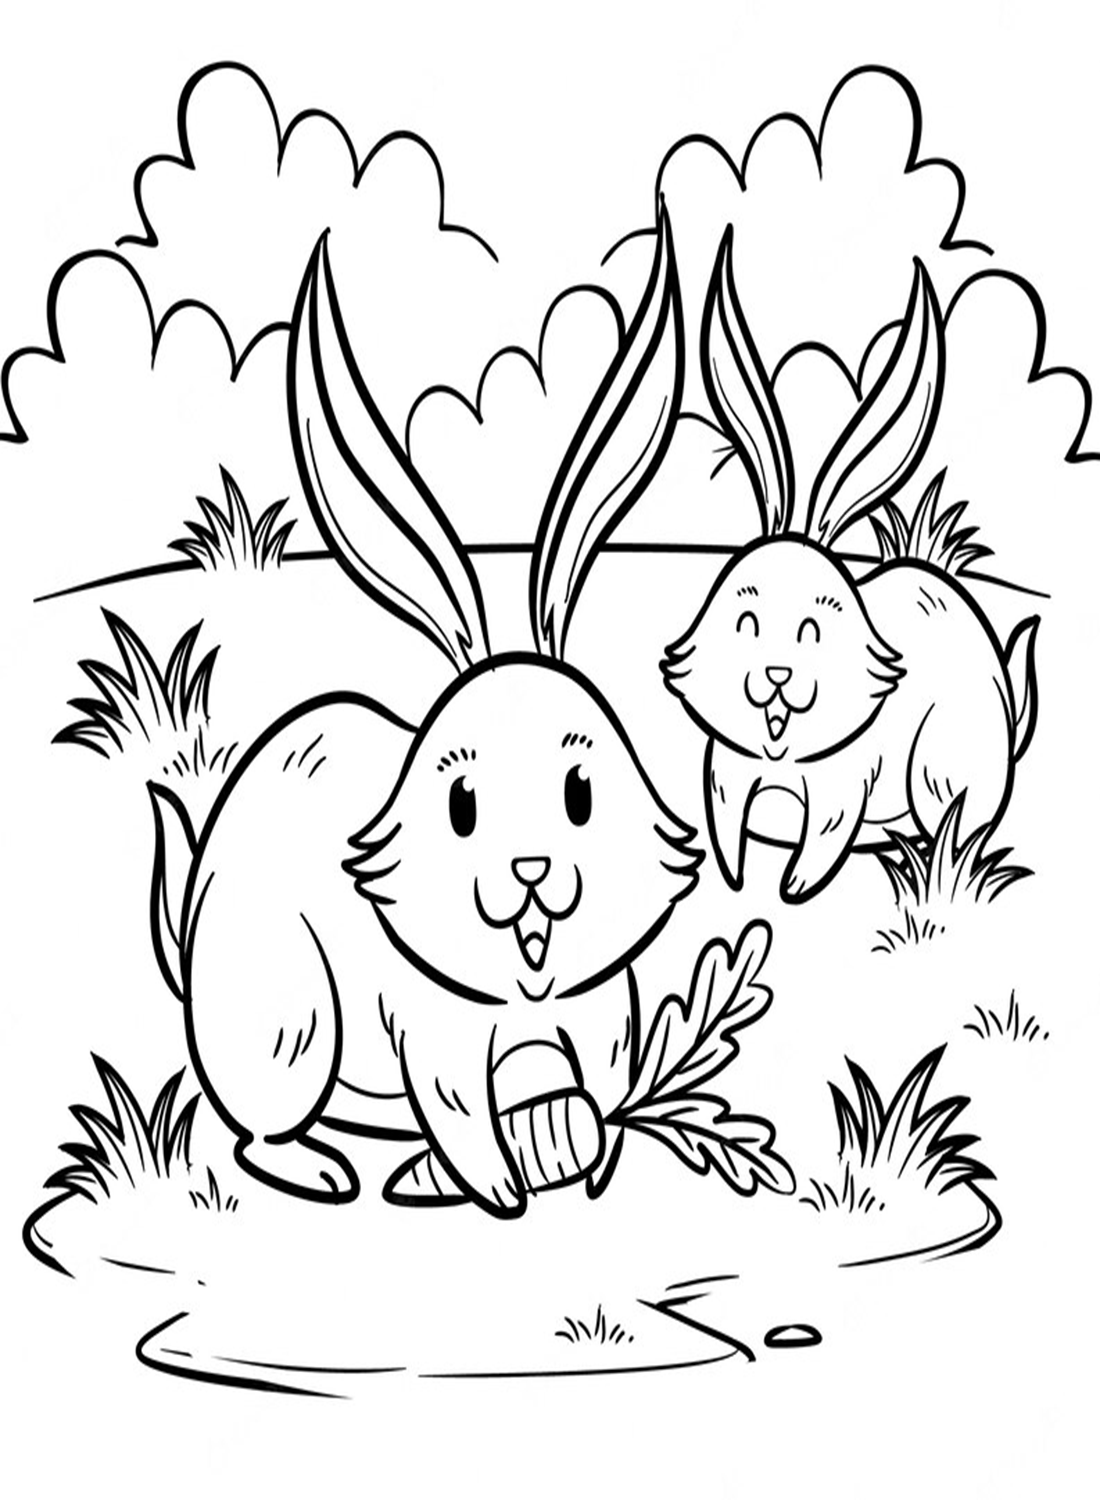 两只兔子在草地上玩耍 from Rabbit